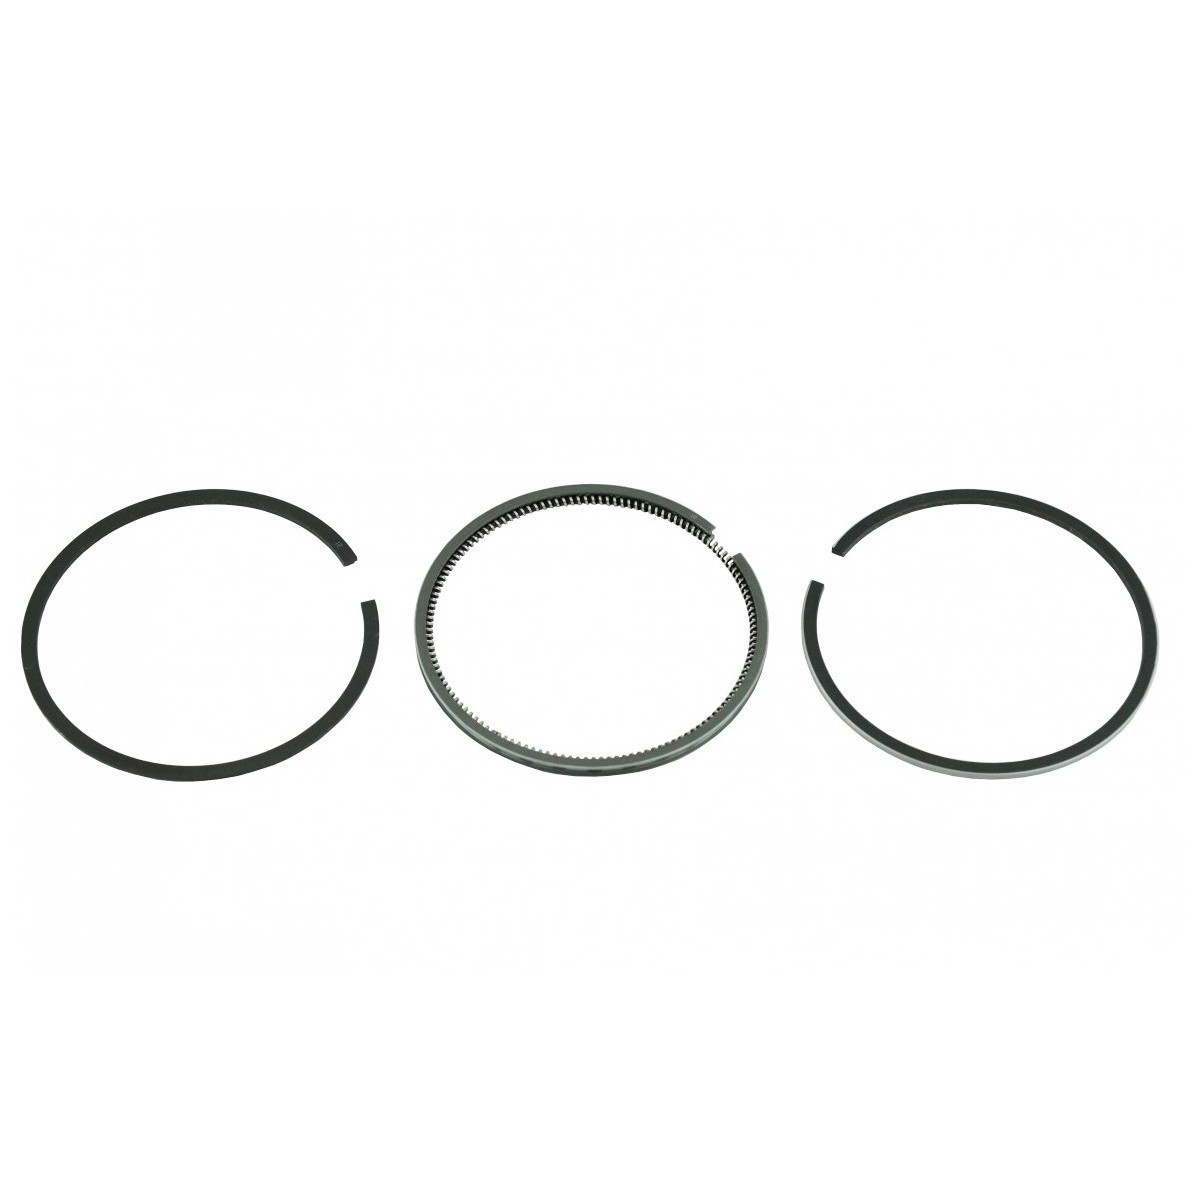 Piston rings 78 mm Mitsubishi S3L, S4L (2.50 + 2 + 4 mm) STD